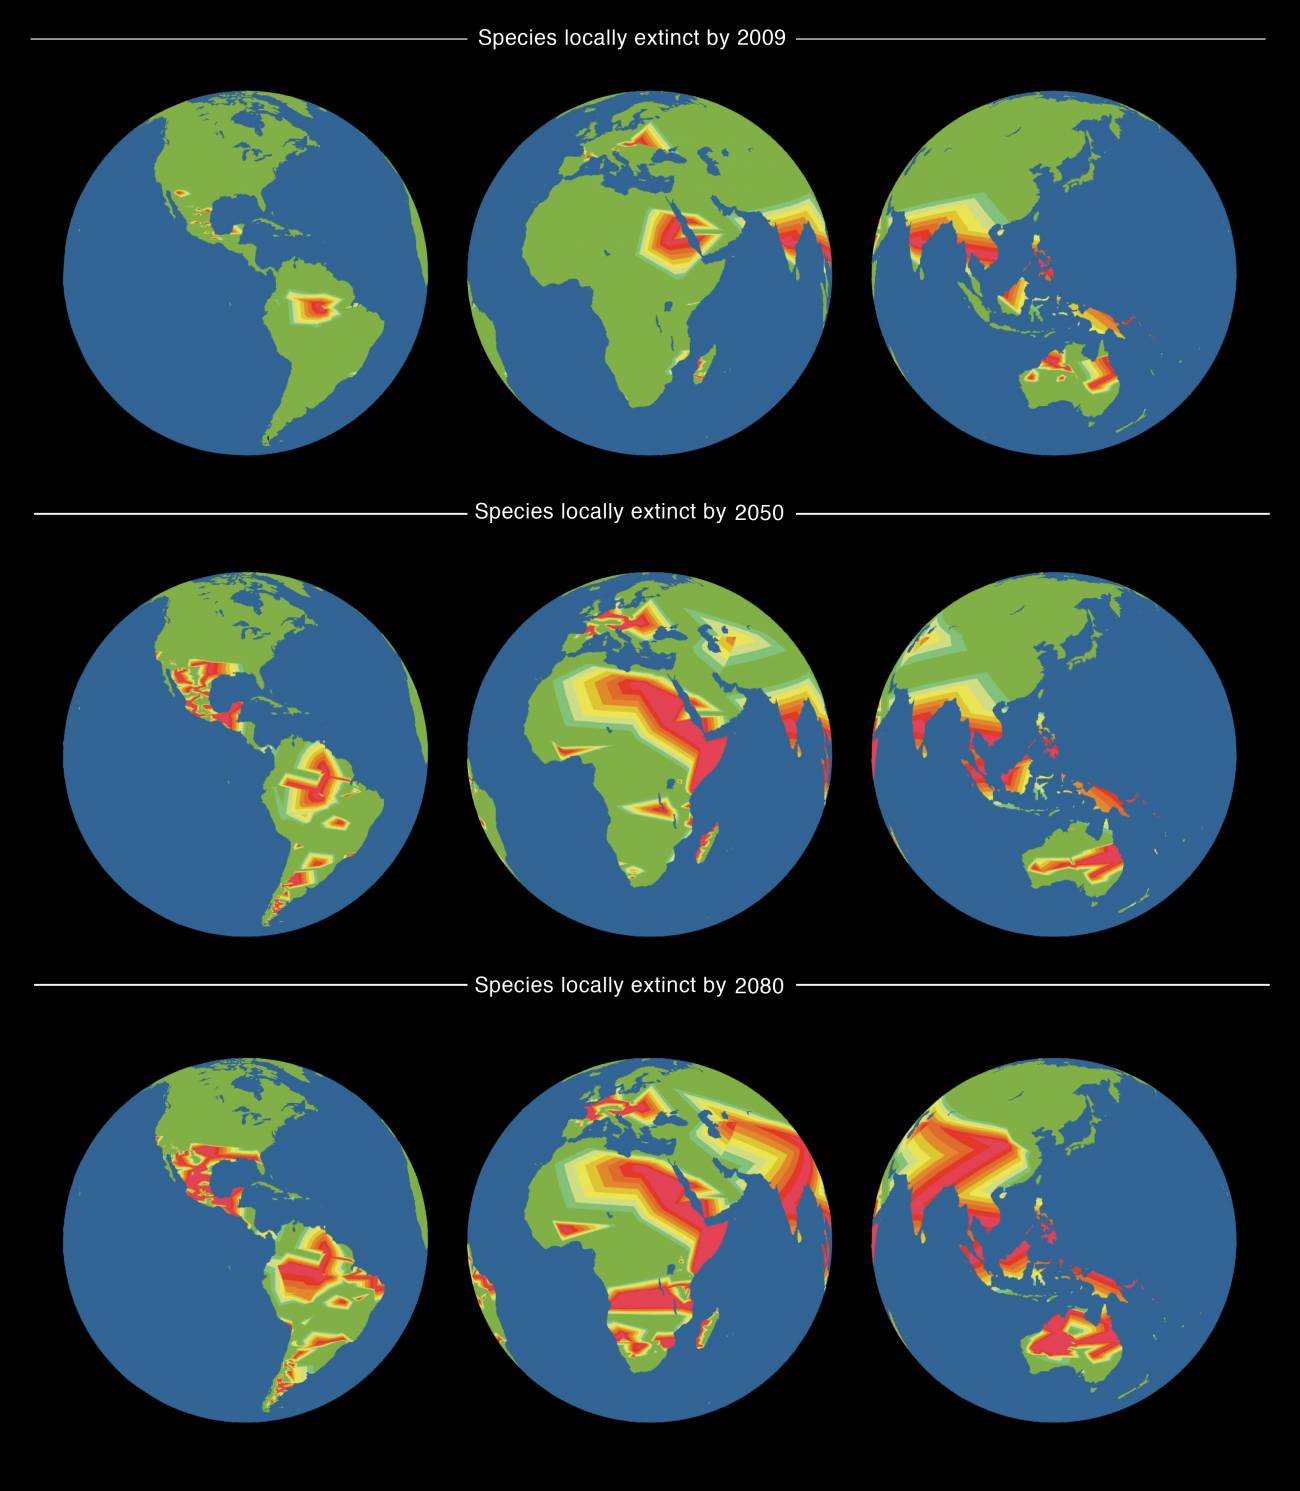 Mapas mundiales de las extinciones detectadas en 2009, junto con proyecciones para 2050 y 2080 basadas en la distribución geográfica de las familias de lagartos en del mundo.